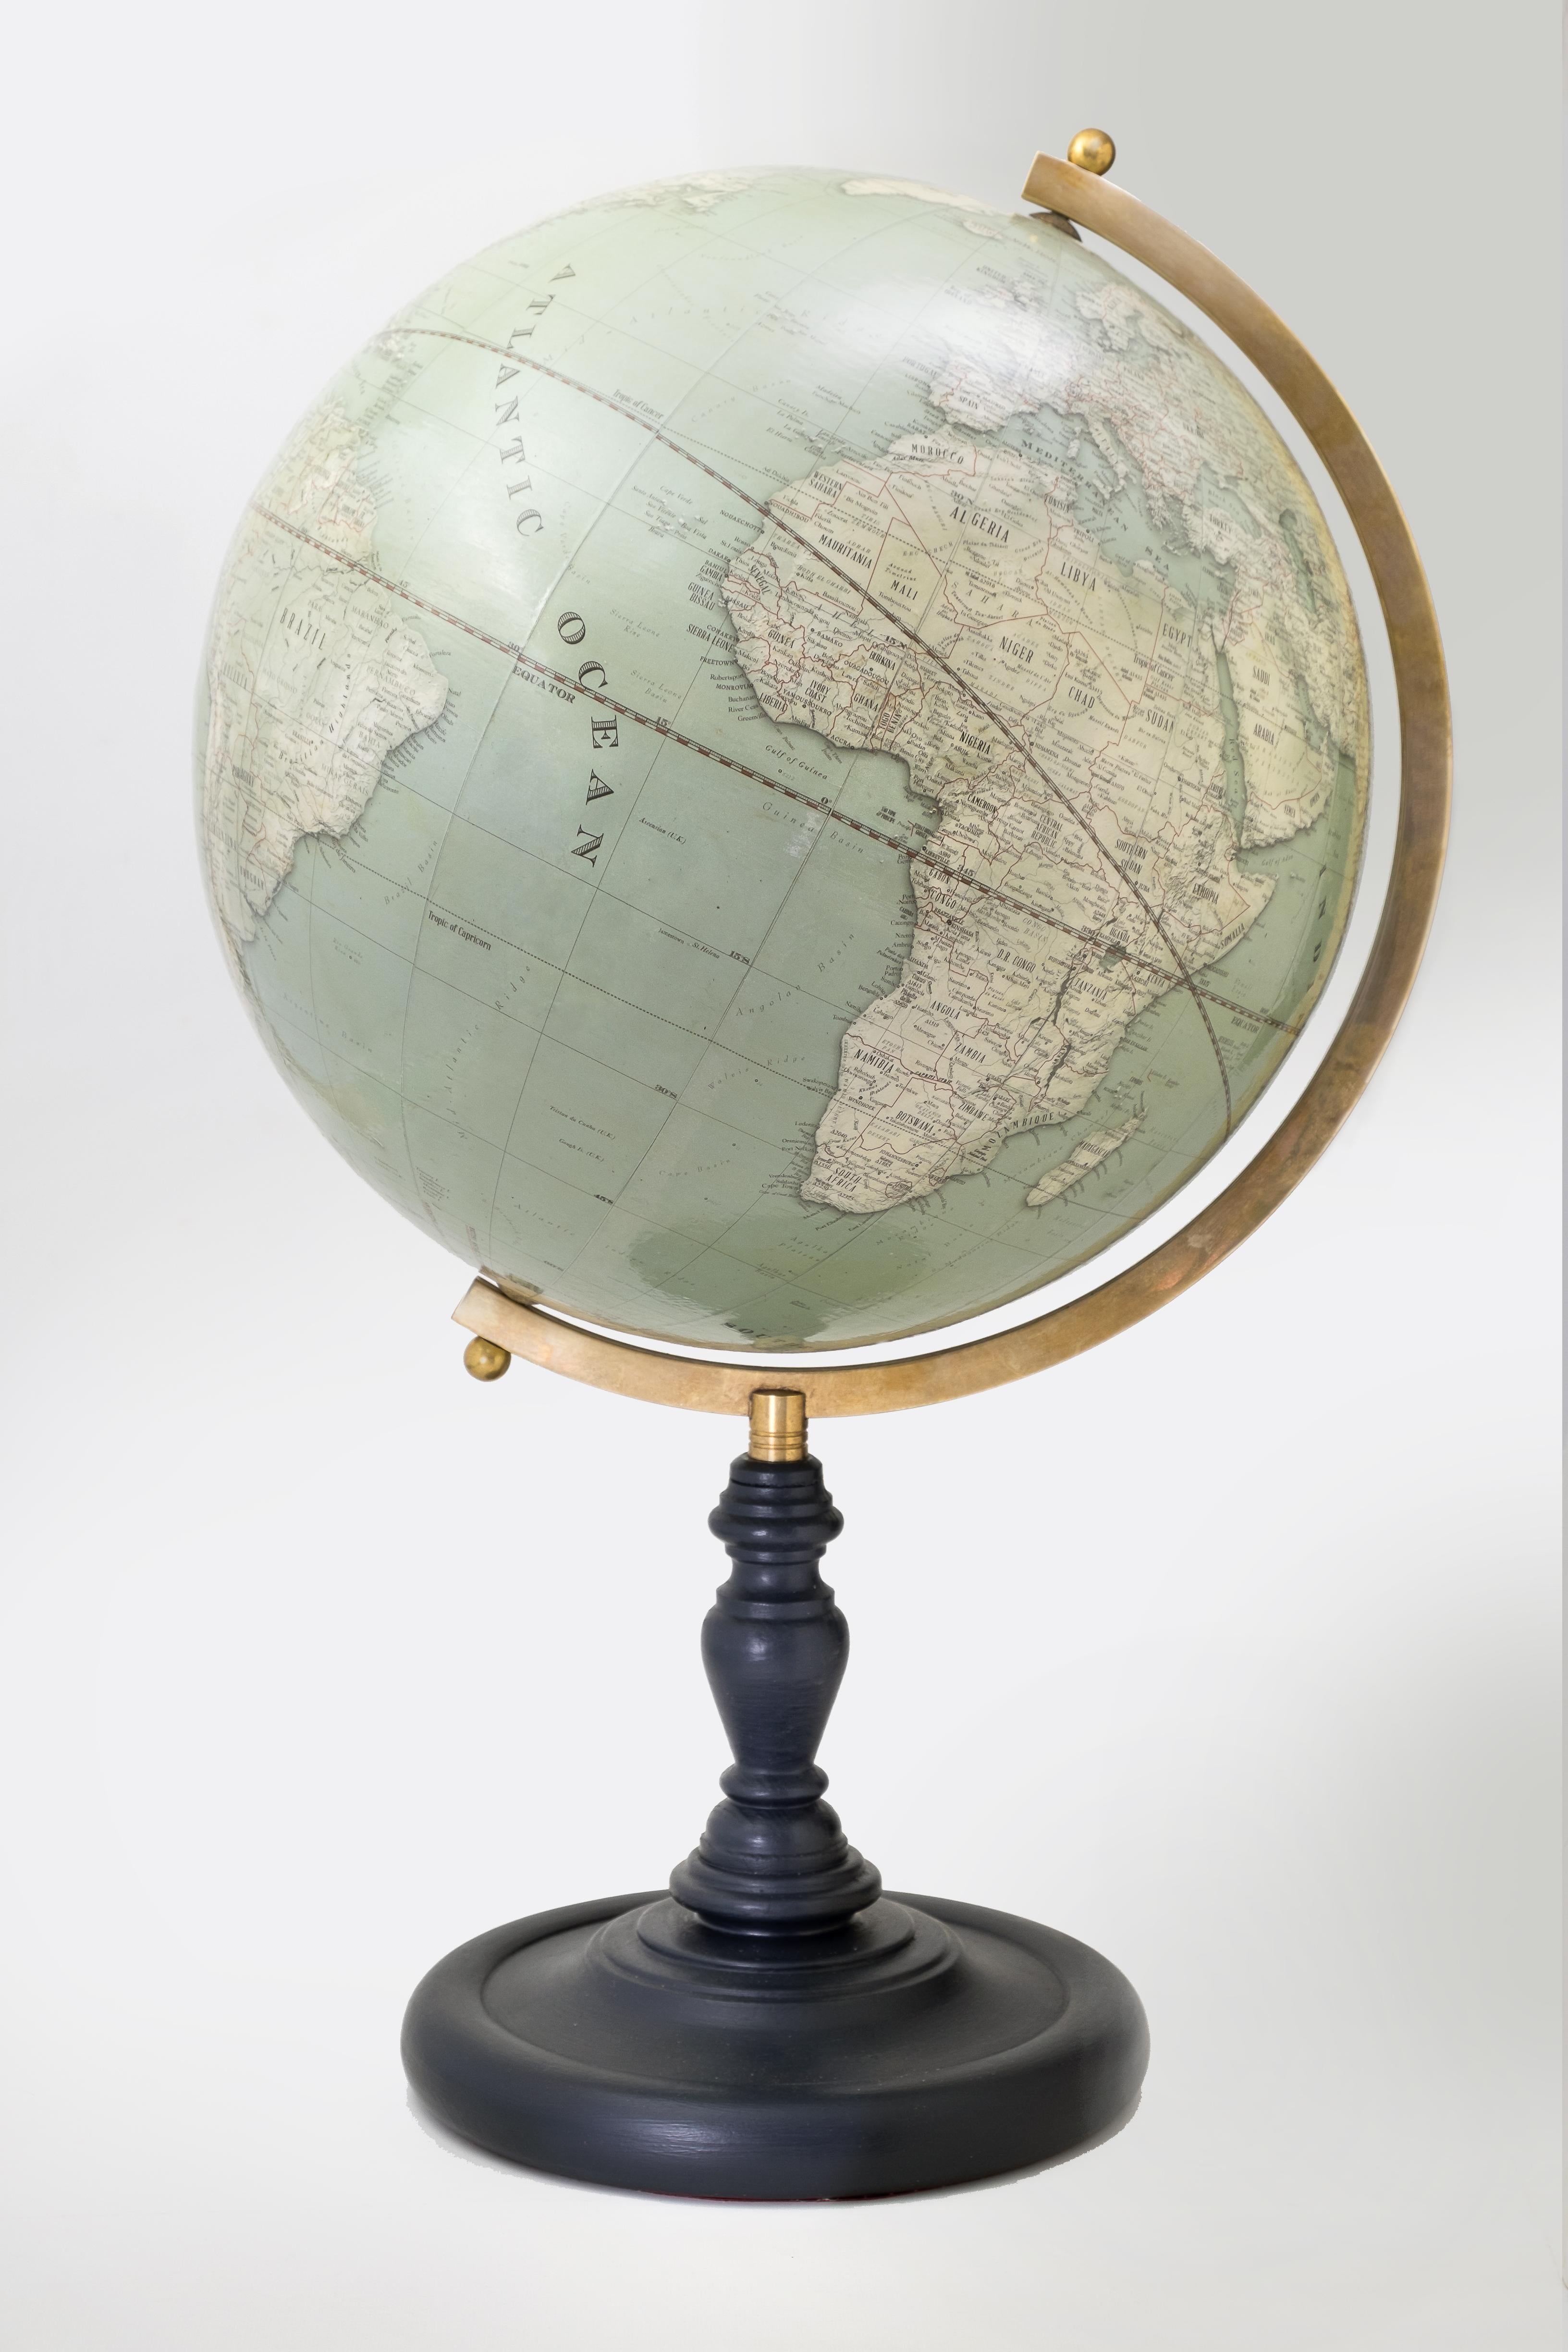 Ce globe de 15 pouces de diamètre présente les mêmes détails cartographiques que la version contemporaine, mais il est présenté dans un style vintage classique.
La cartographie est constamment mise à jour et comprend 2780 villes et villages, 730